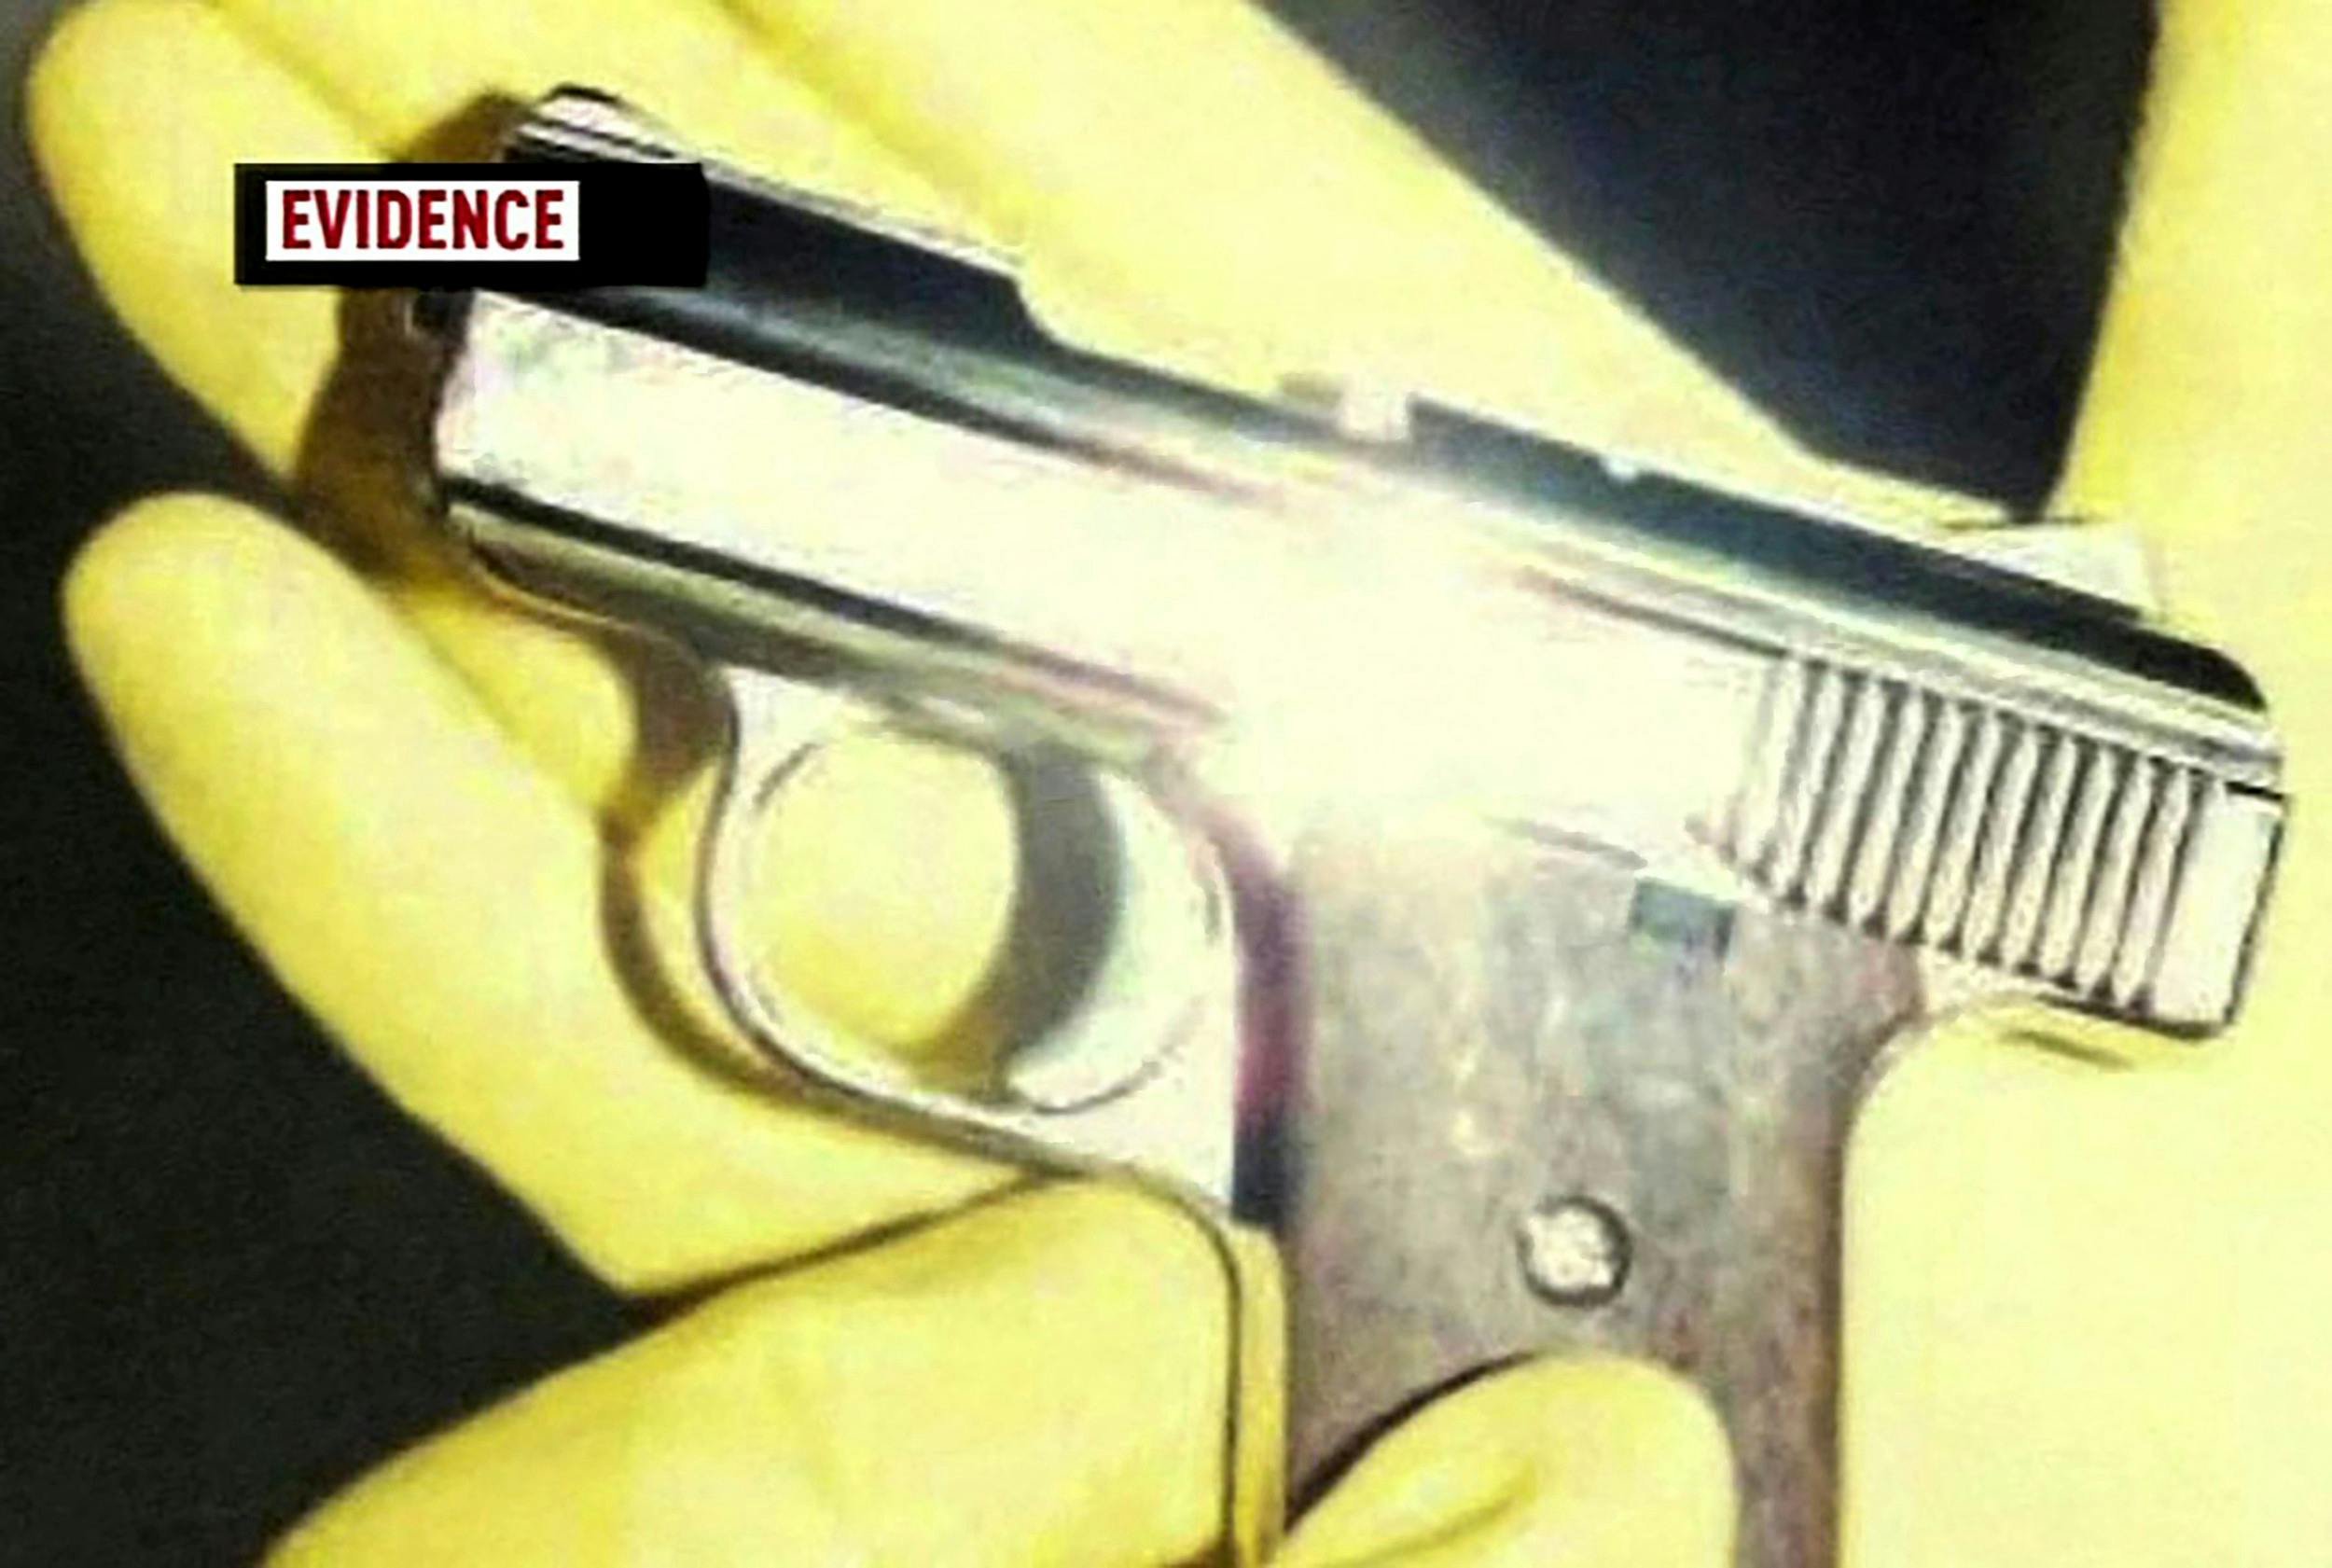 Drabsvåbnet var denne revolver, som ifølge Betty Kirk gik af ved et uheld.